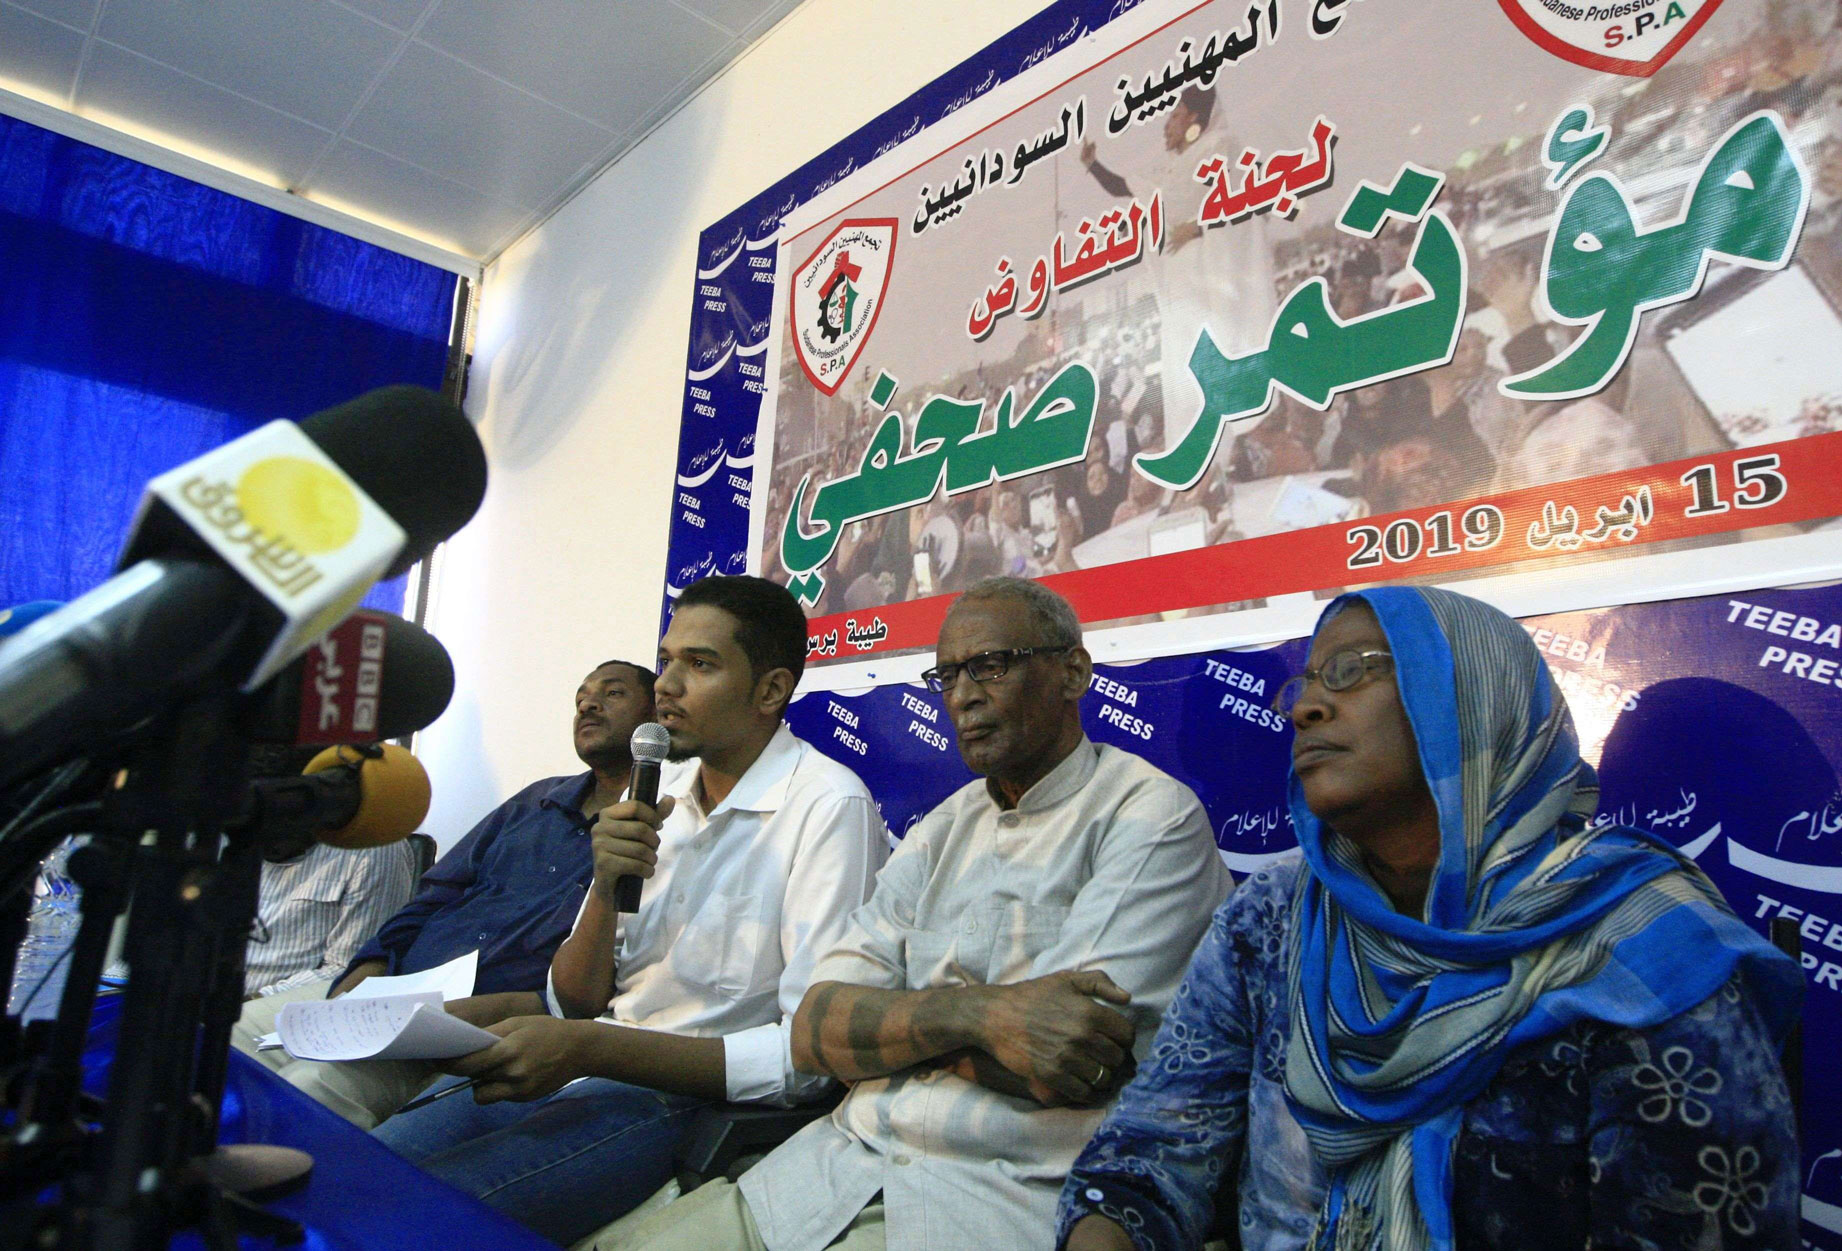 تجمع المهنيين السودانيين